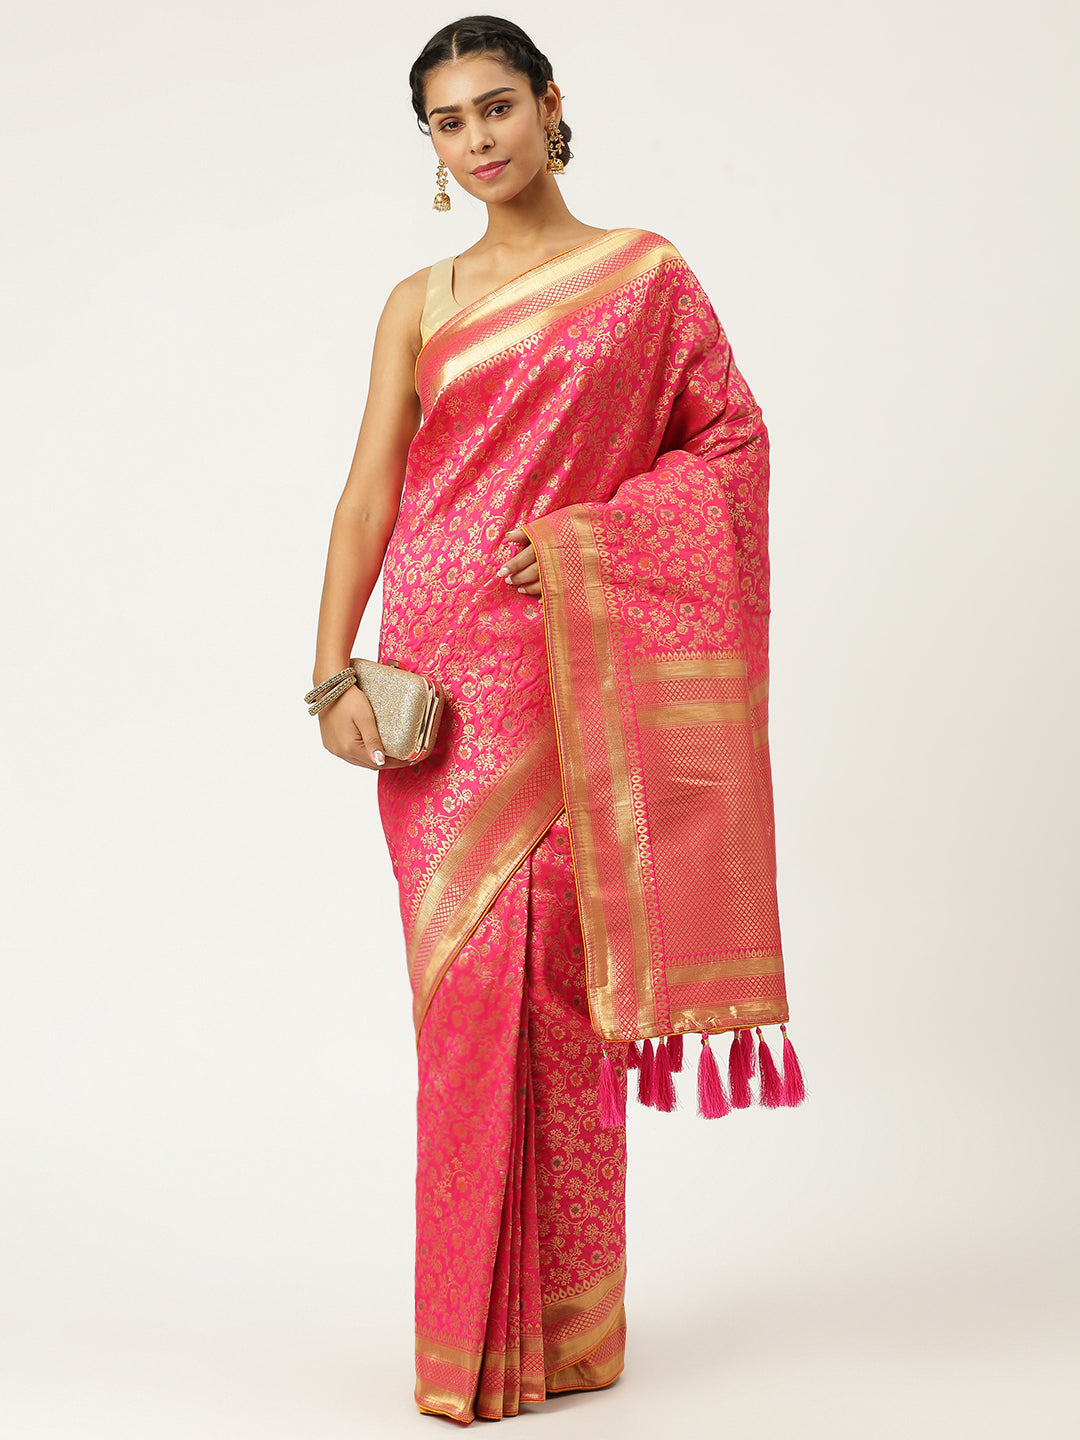 Buy pink designer banarasi saree online on Karagiri | BUY NOW